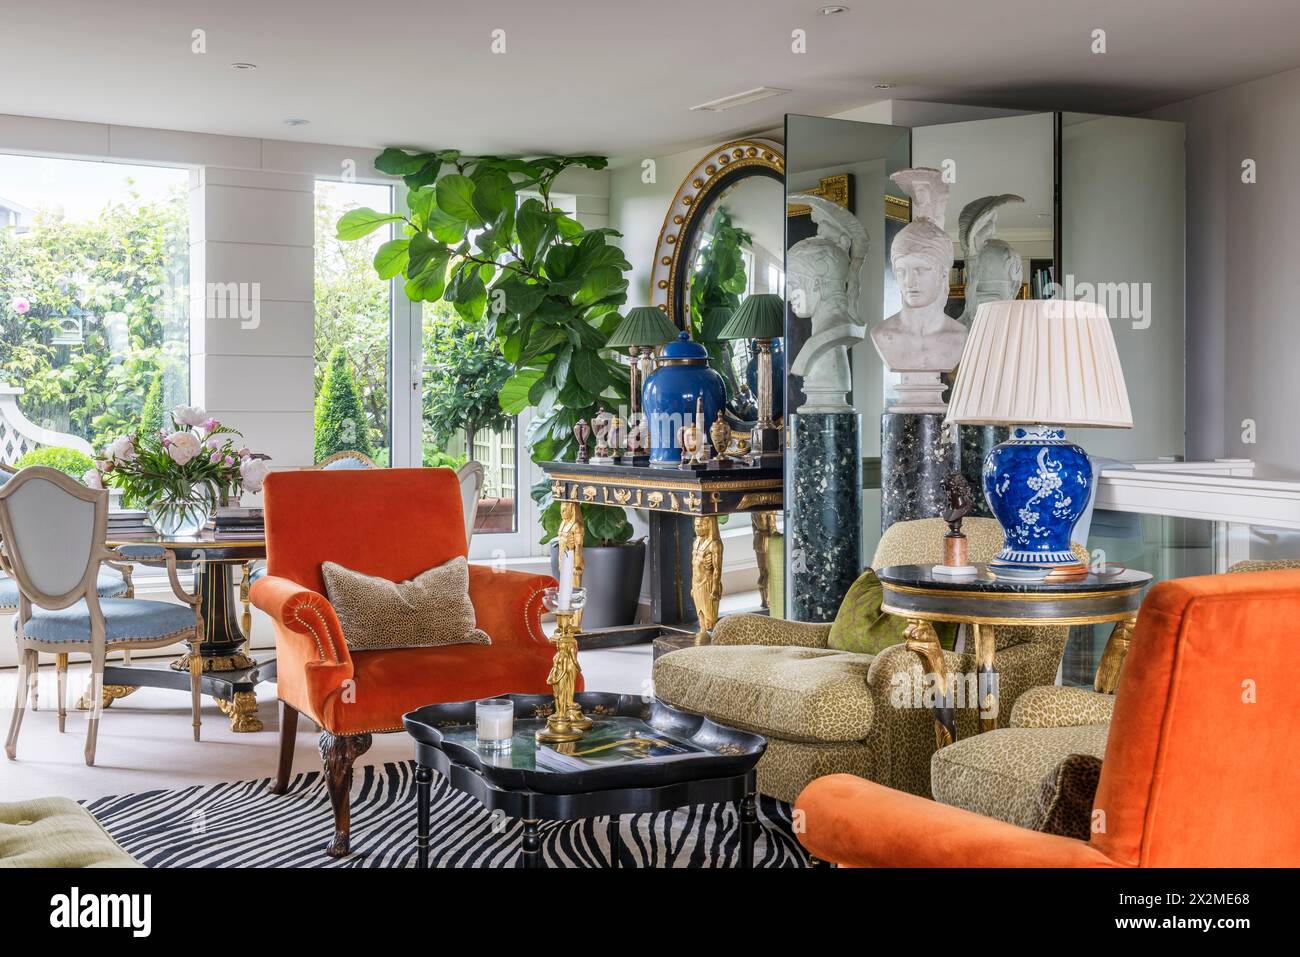 Lampe sur table avec fauteuils en velours assortis dans l'appartement Chelsea, Londres Royaume-Uni Banque D'Images